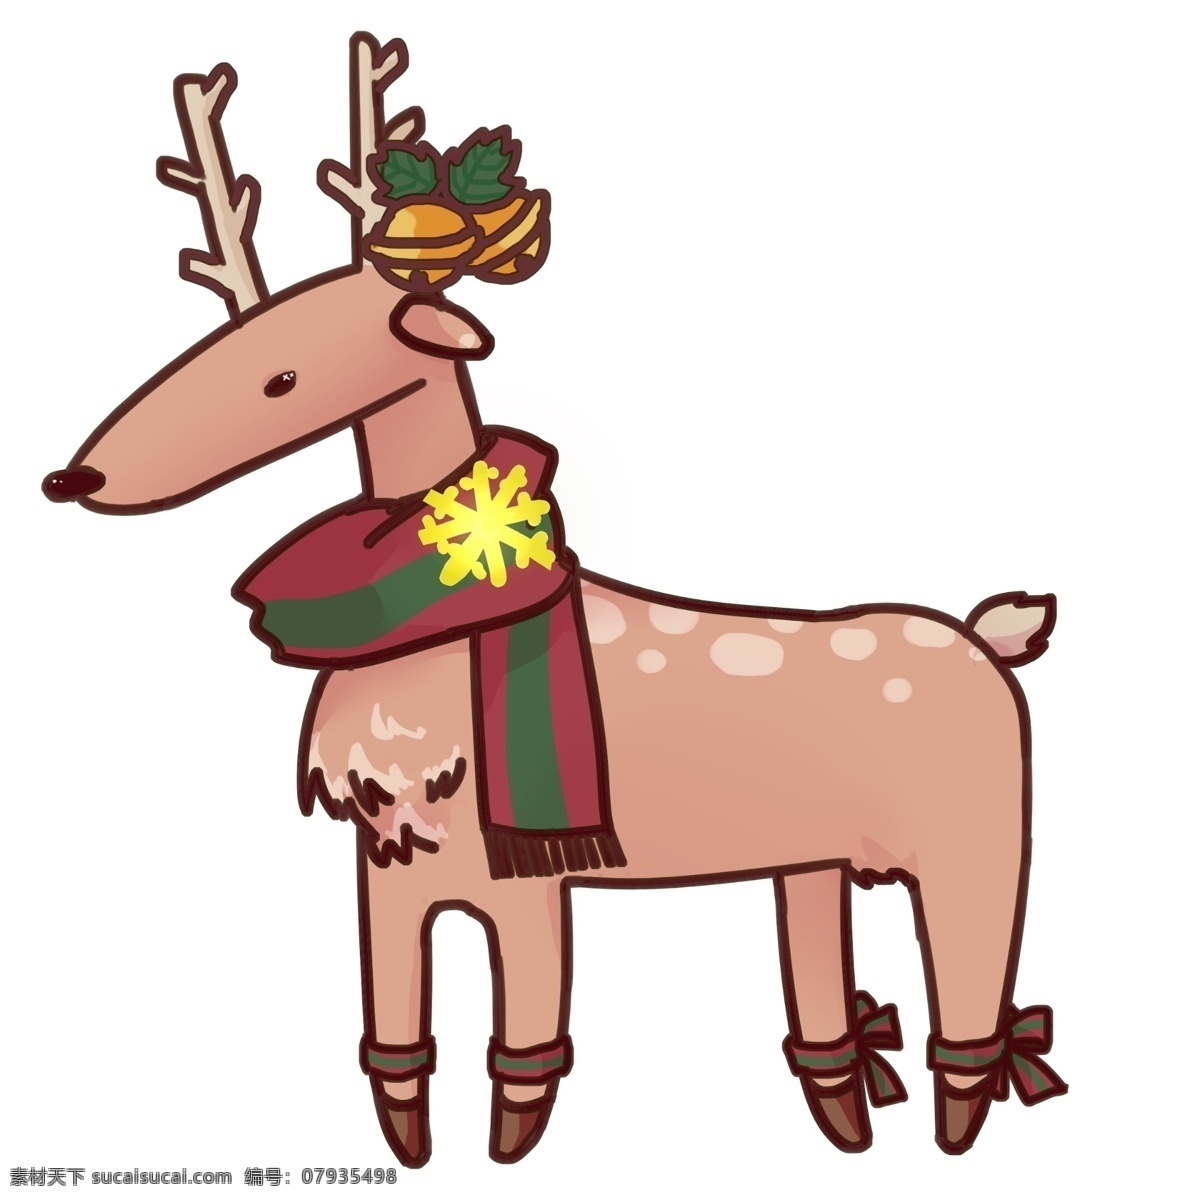 麋鹿 圣诞 卡通 可爱 节日 手绘 原创 铃铛 围巾 卡哇伊